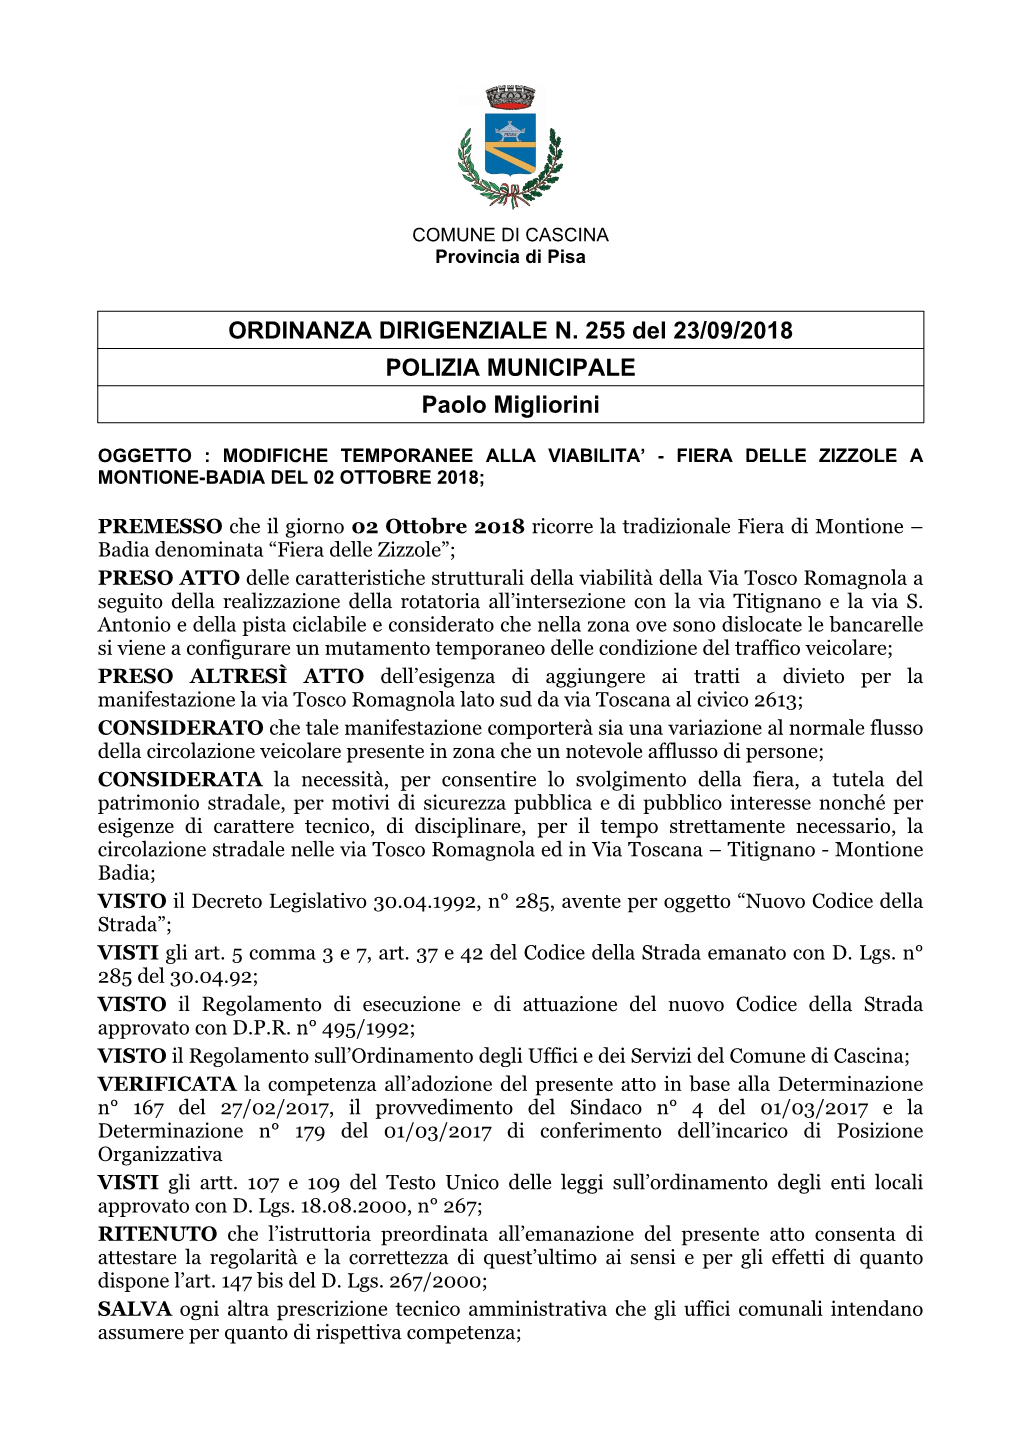 ORDINANZA DIRIGENZIALE N. 255 Del 23/09/2018 POLIZIA MUNICIPALE Paolo Migliorini